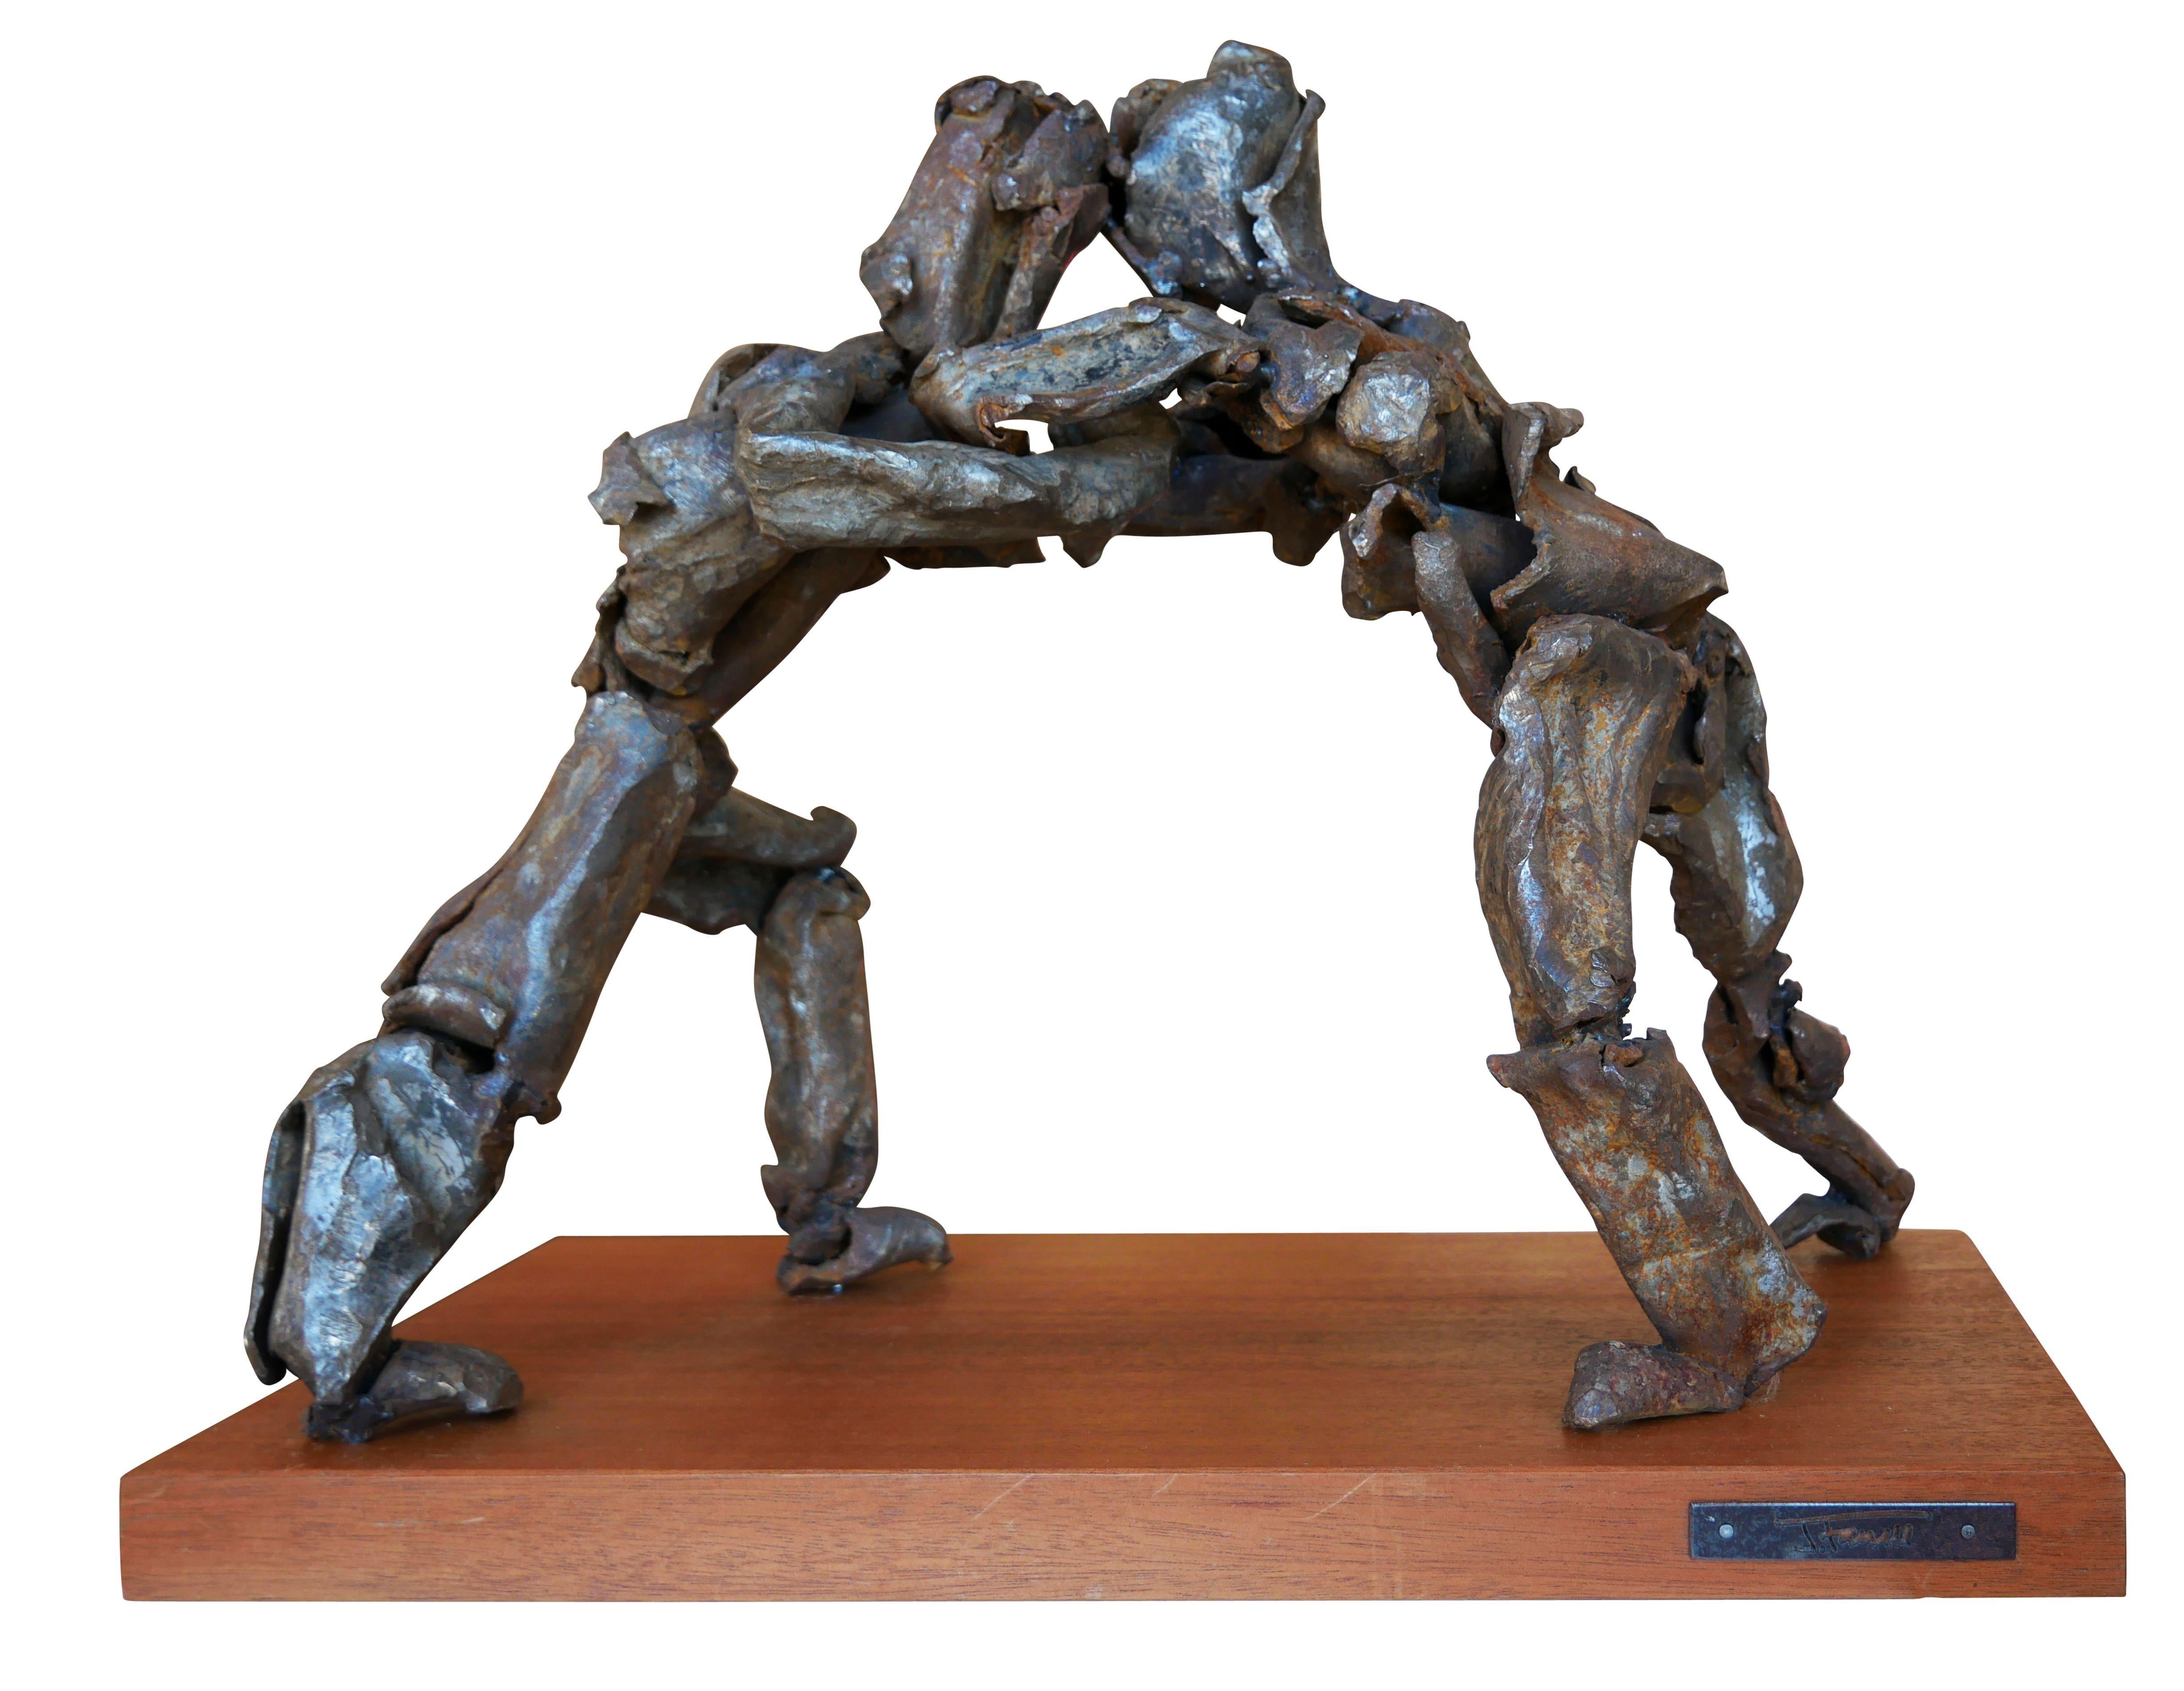 Jack Farrell Abstract Sculpture – Modernistische abstrakte figurative Skulptur „Sumo“ aus Stahl und Holz